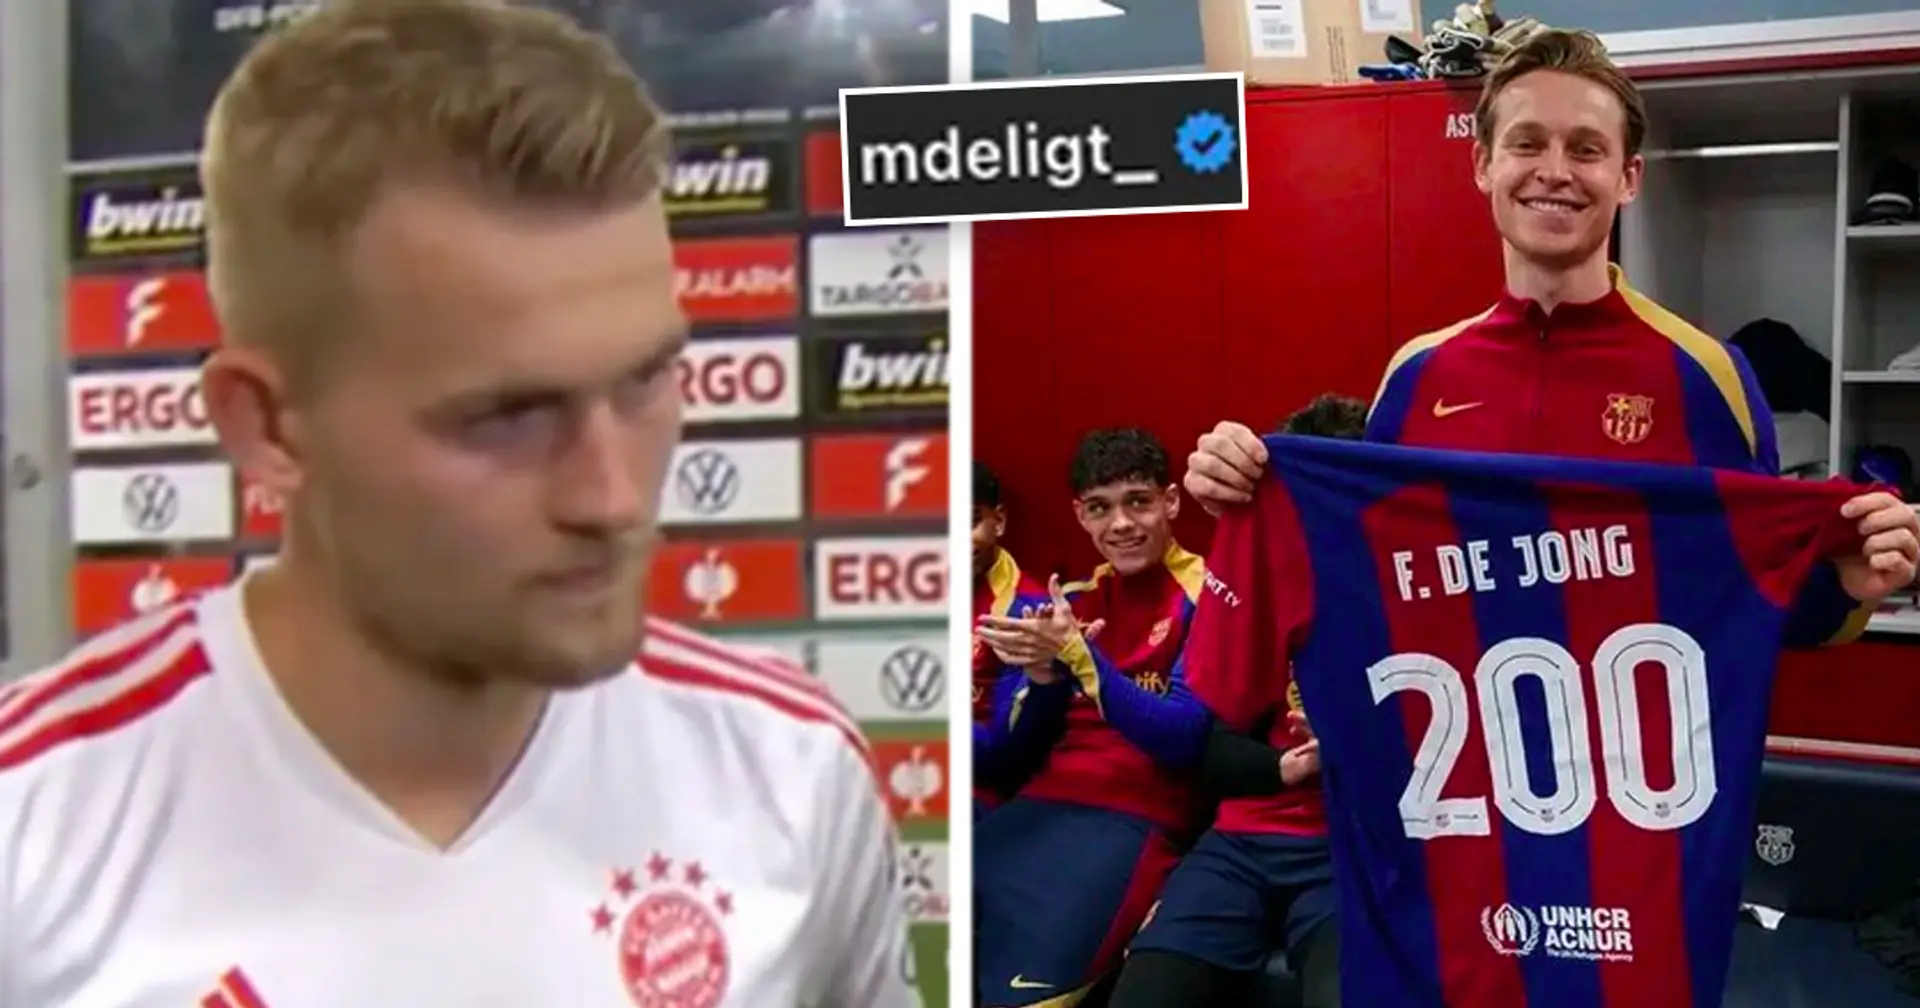 Matthijs de Ligt réagit à l'exploit historique de De Jong au Barça – au moment même où des rumeurs de départ du Bayern émergent